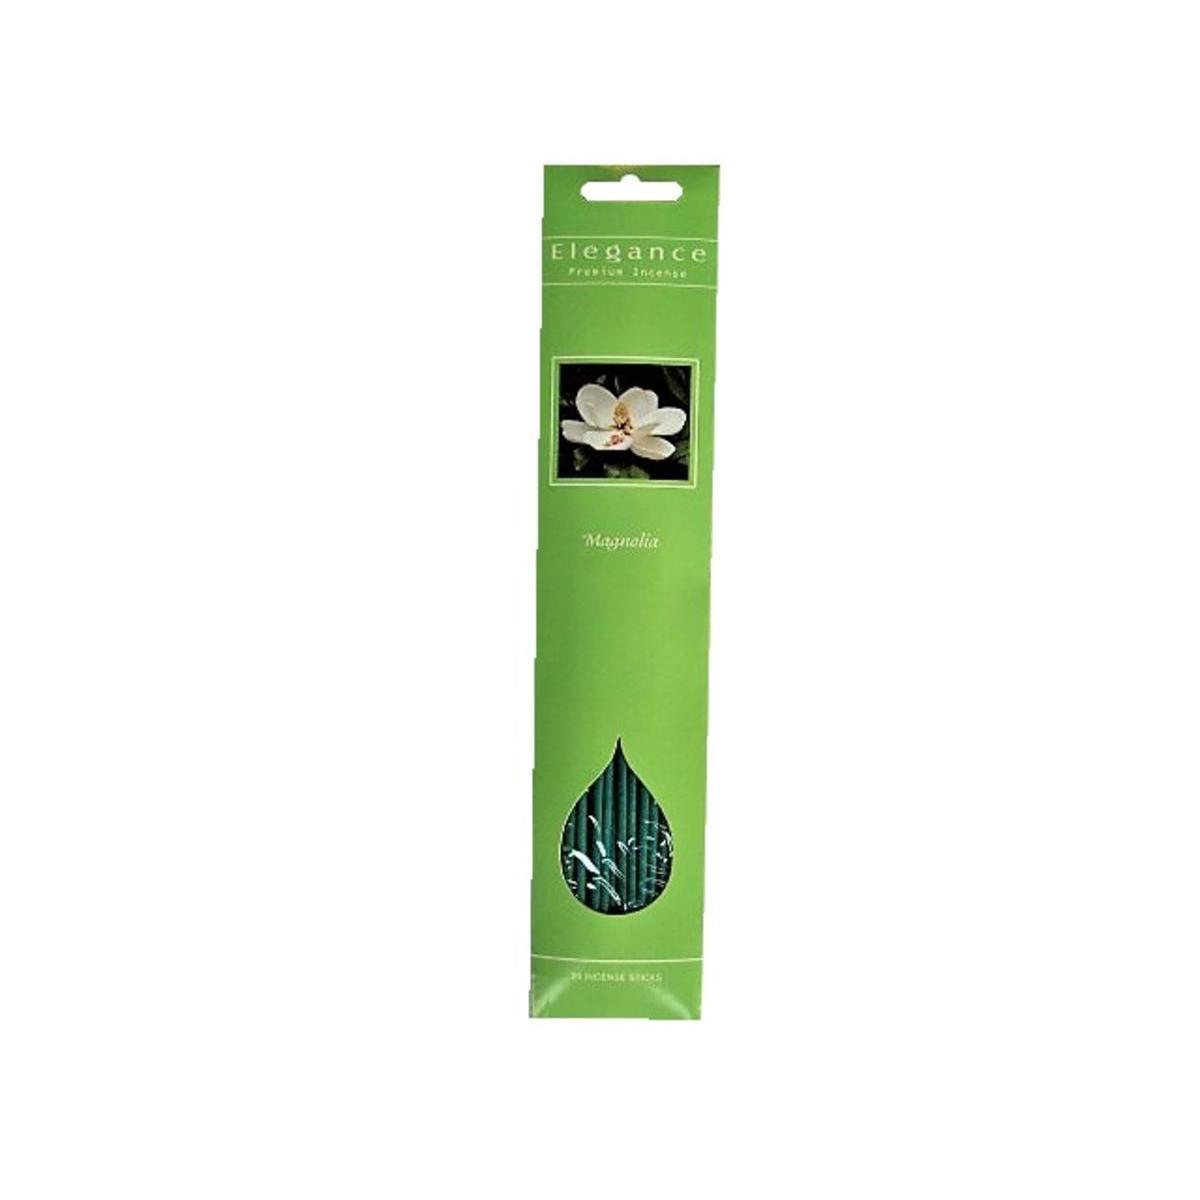 20 bâtonnets d'encens parfum magnolia - ø 1.5 x L 30 cm - Vert